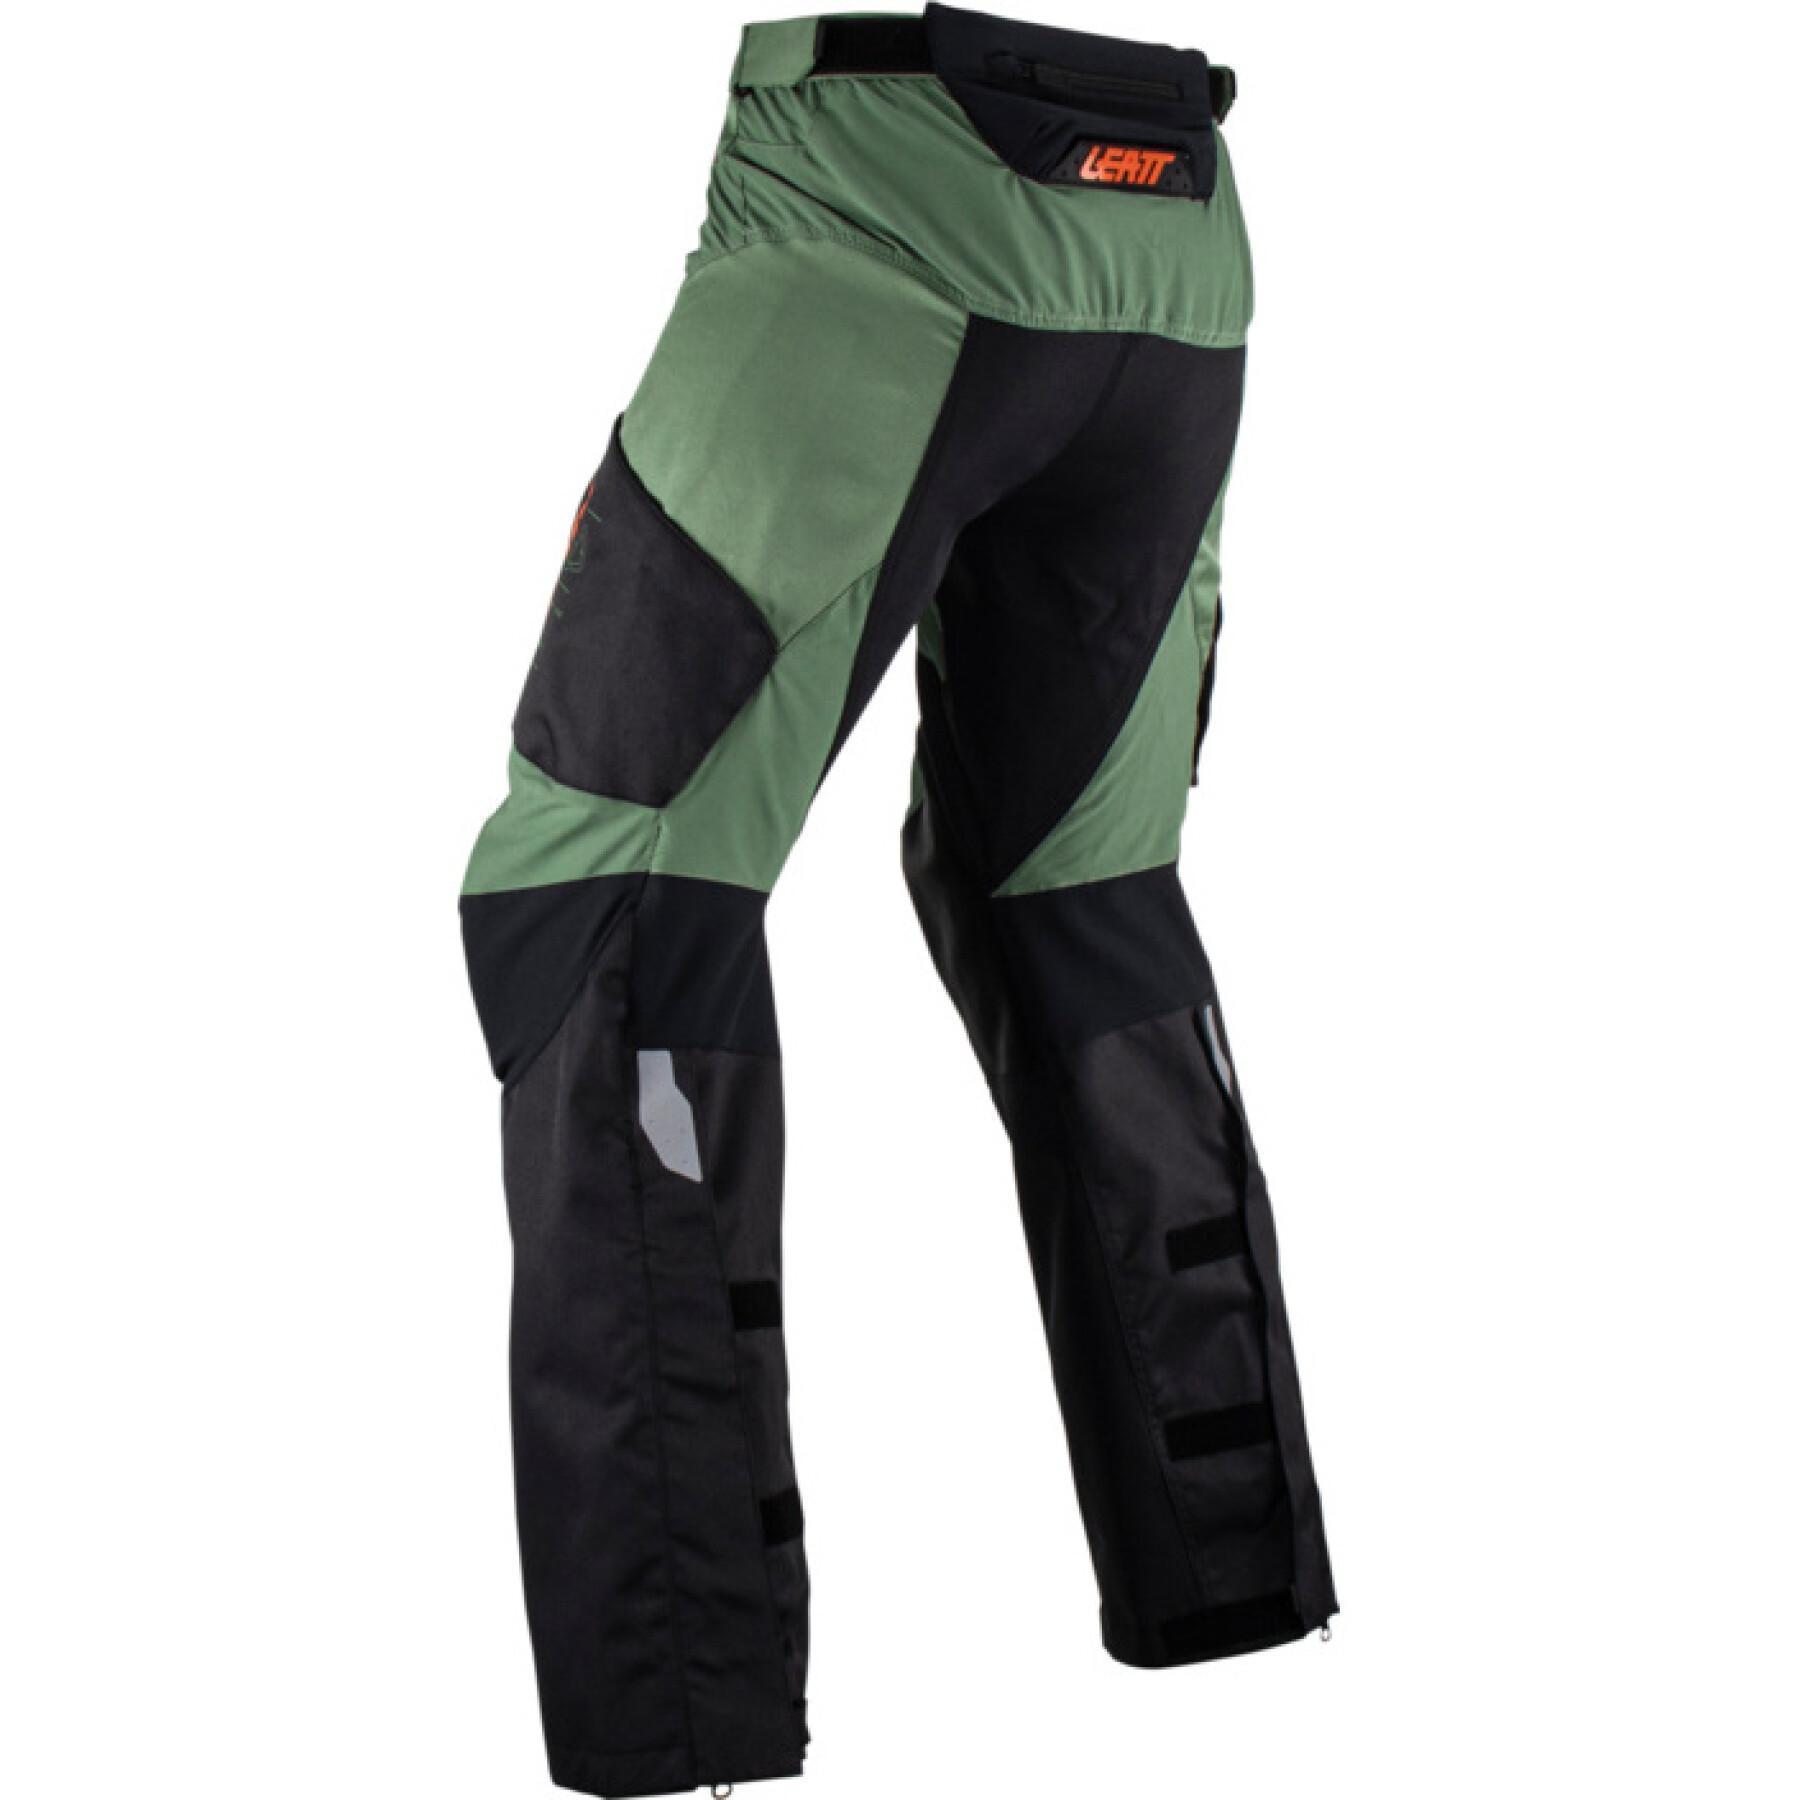 Pantalones cruzados de moto Leatt 5.5 Enduro 23